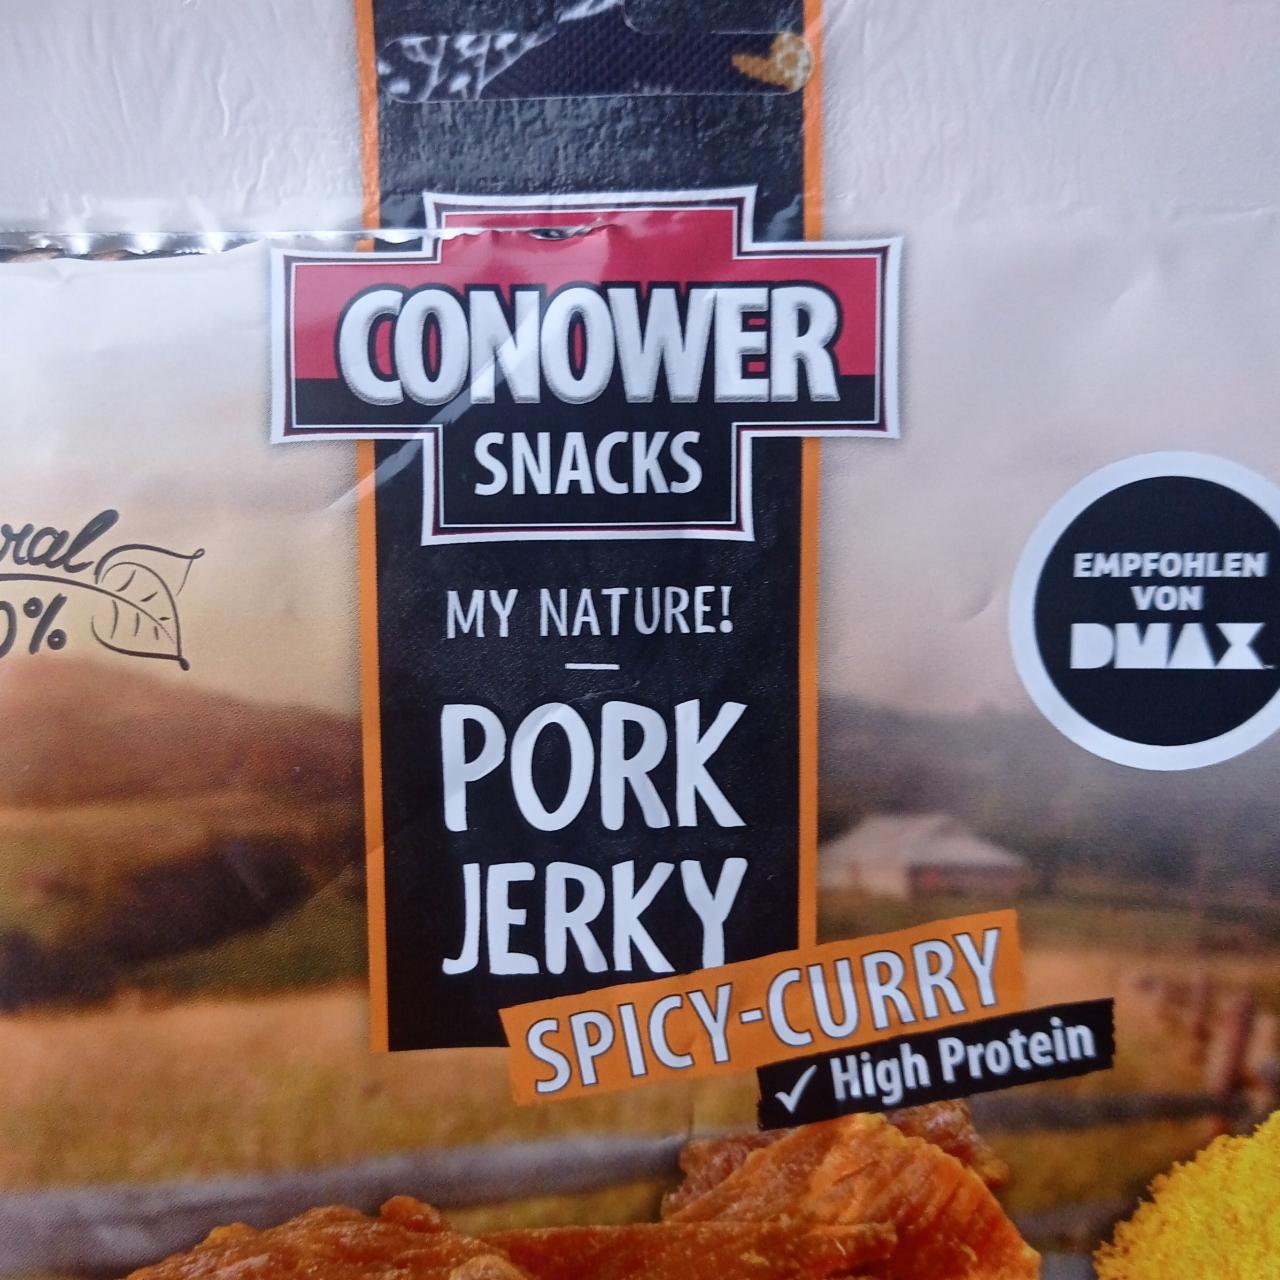 Fotografie - Pork jerky spicy curry Conower snacks